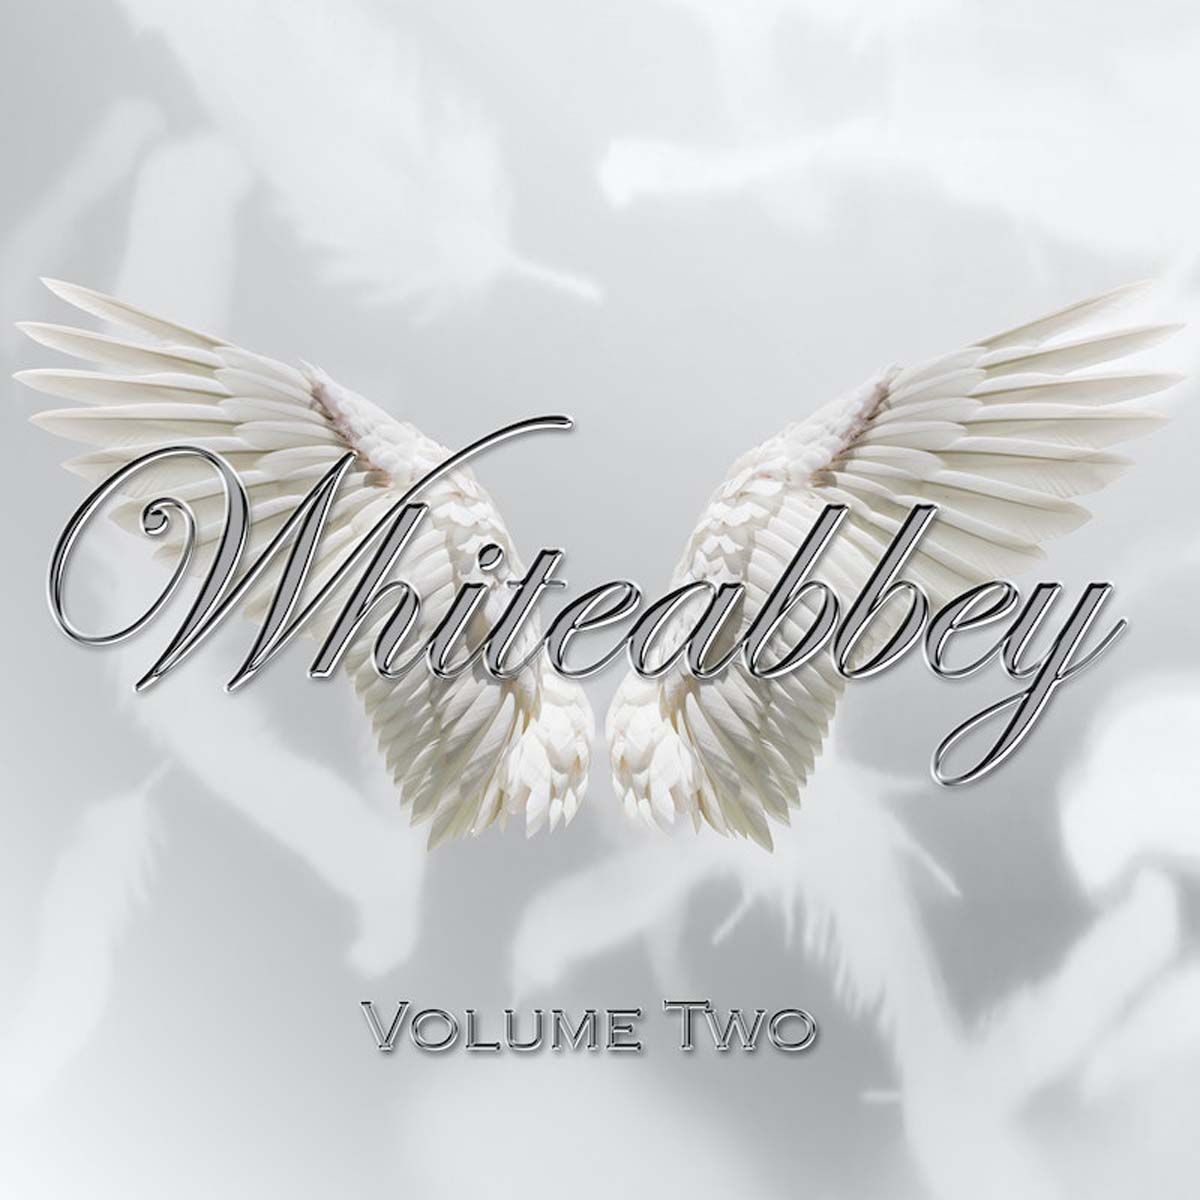 Whiteabbey - Volume Two